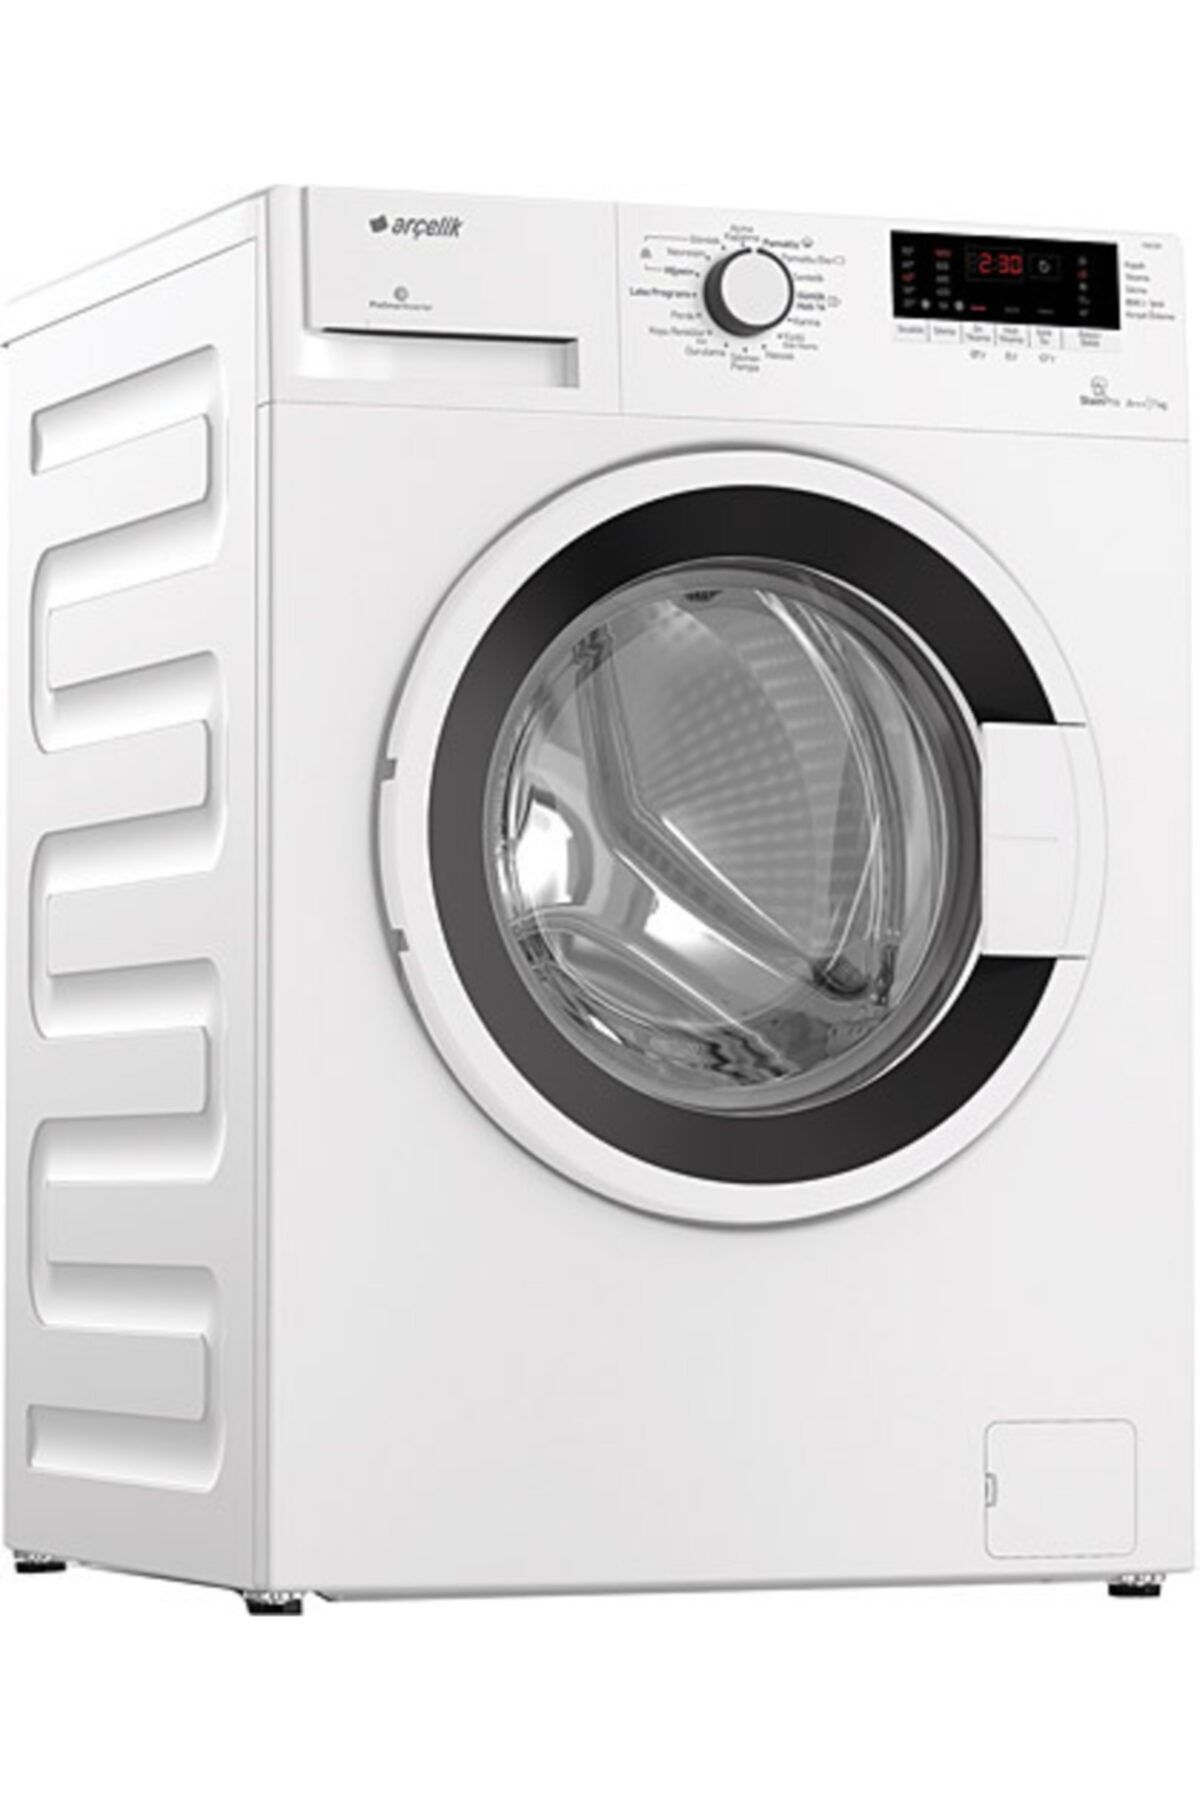 Arçelik 7103 Dy Çamaşır Makinası